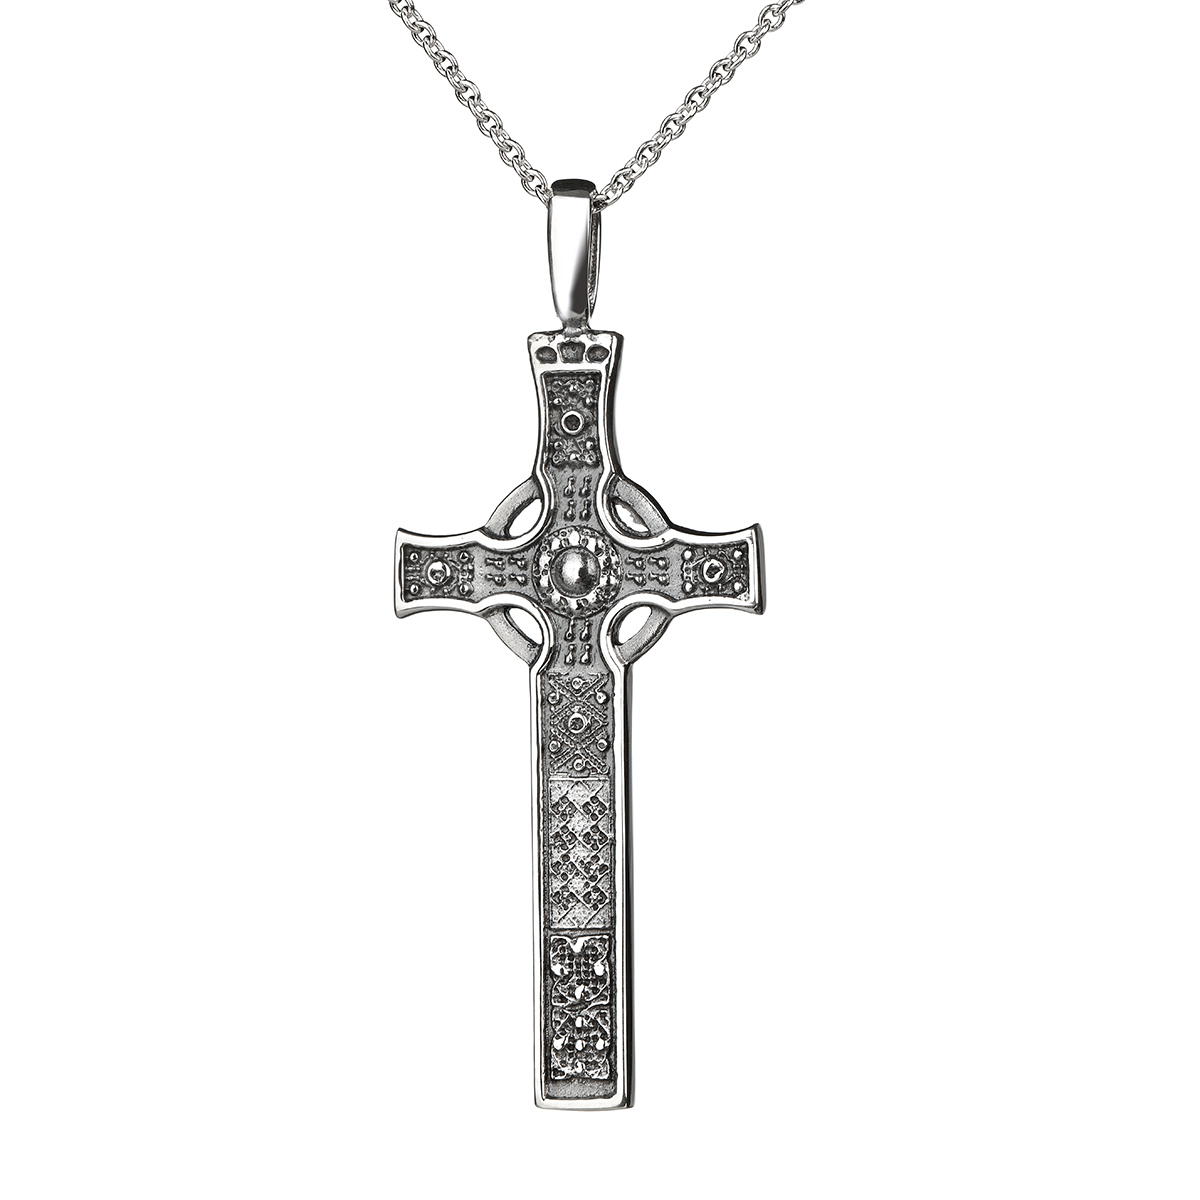 St John's Cross of Iona - Keltisches Kreuz Anhänger aus Orkney, Schottland